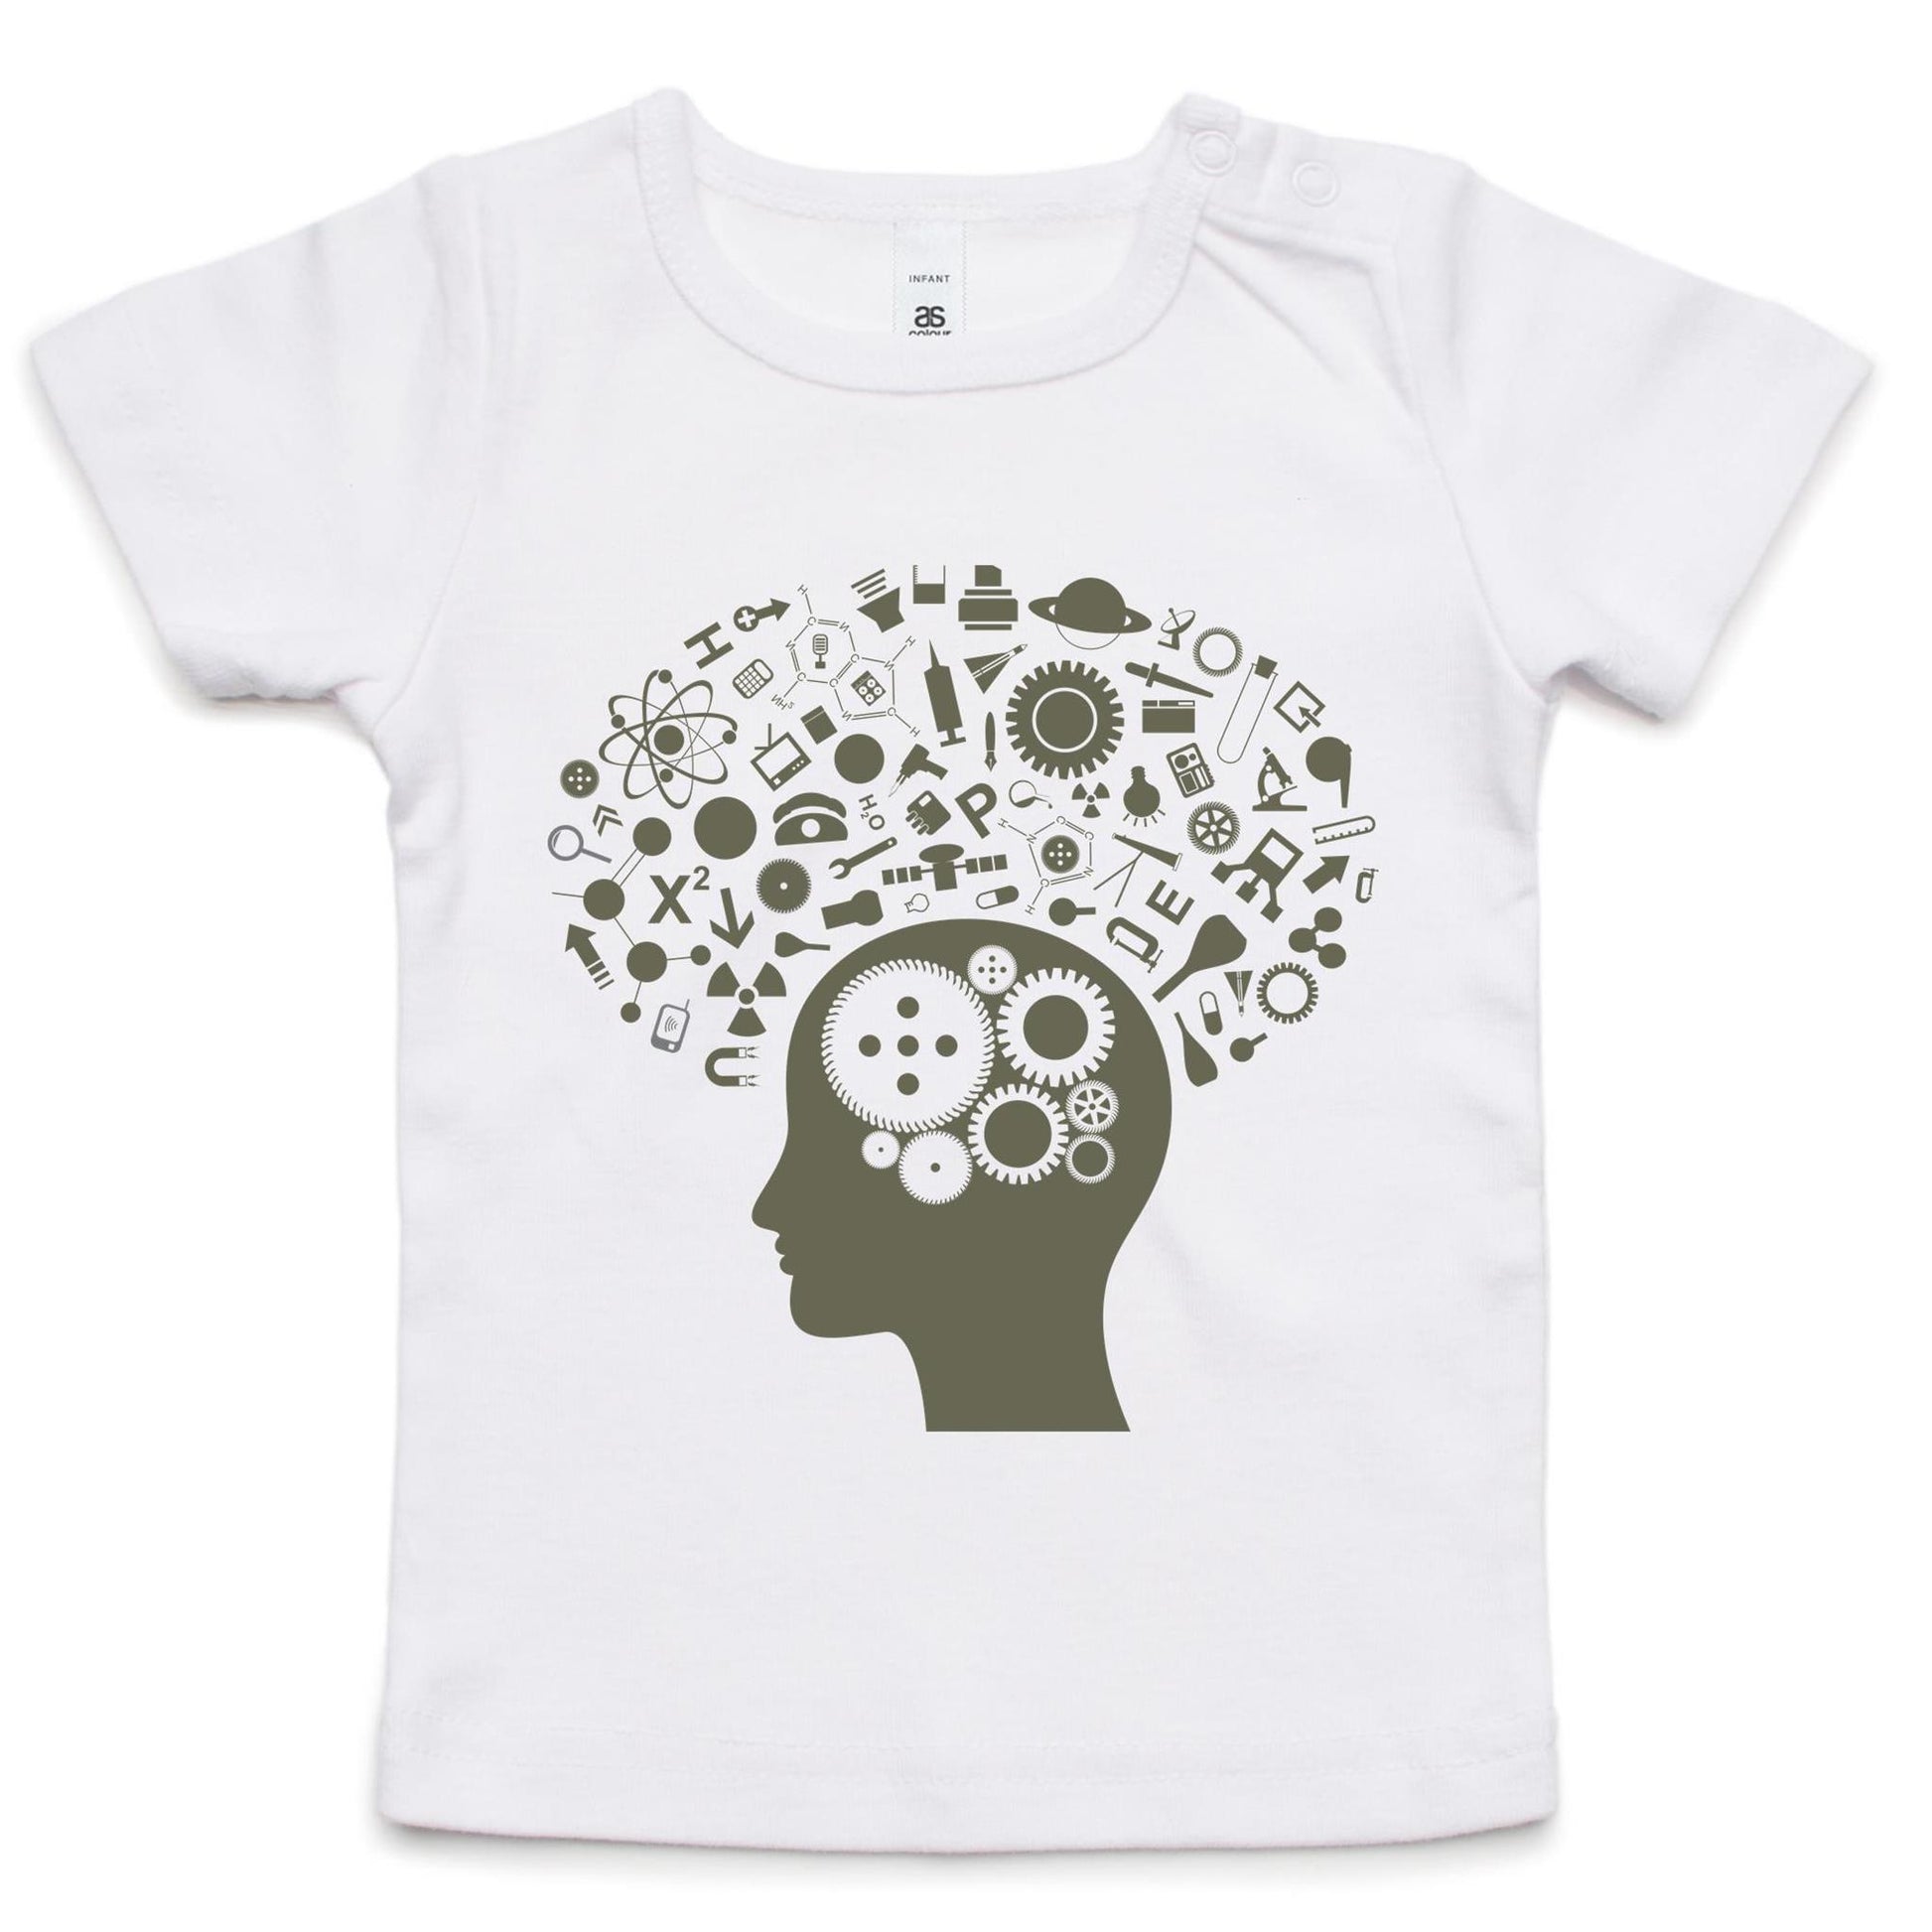 Science Brain - Baby T-shirt White Baby T-shirt kids Science